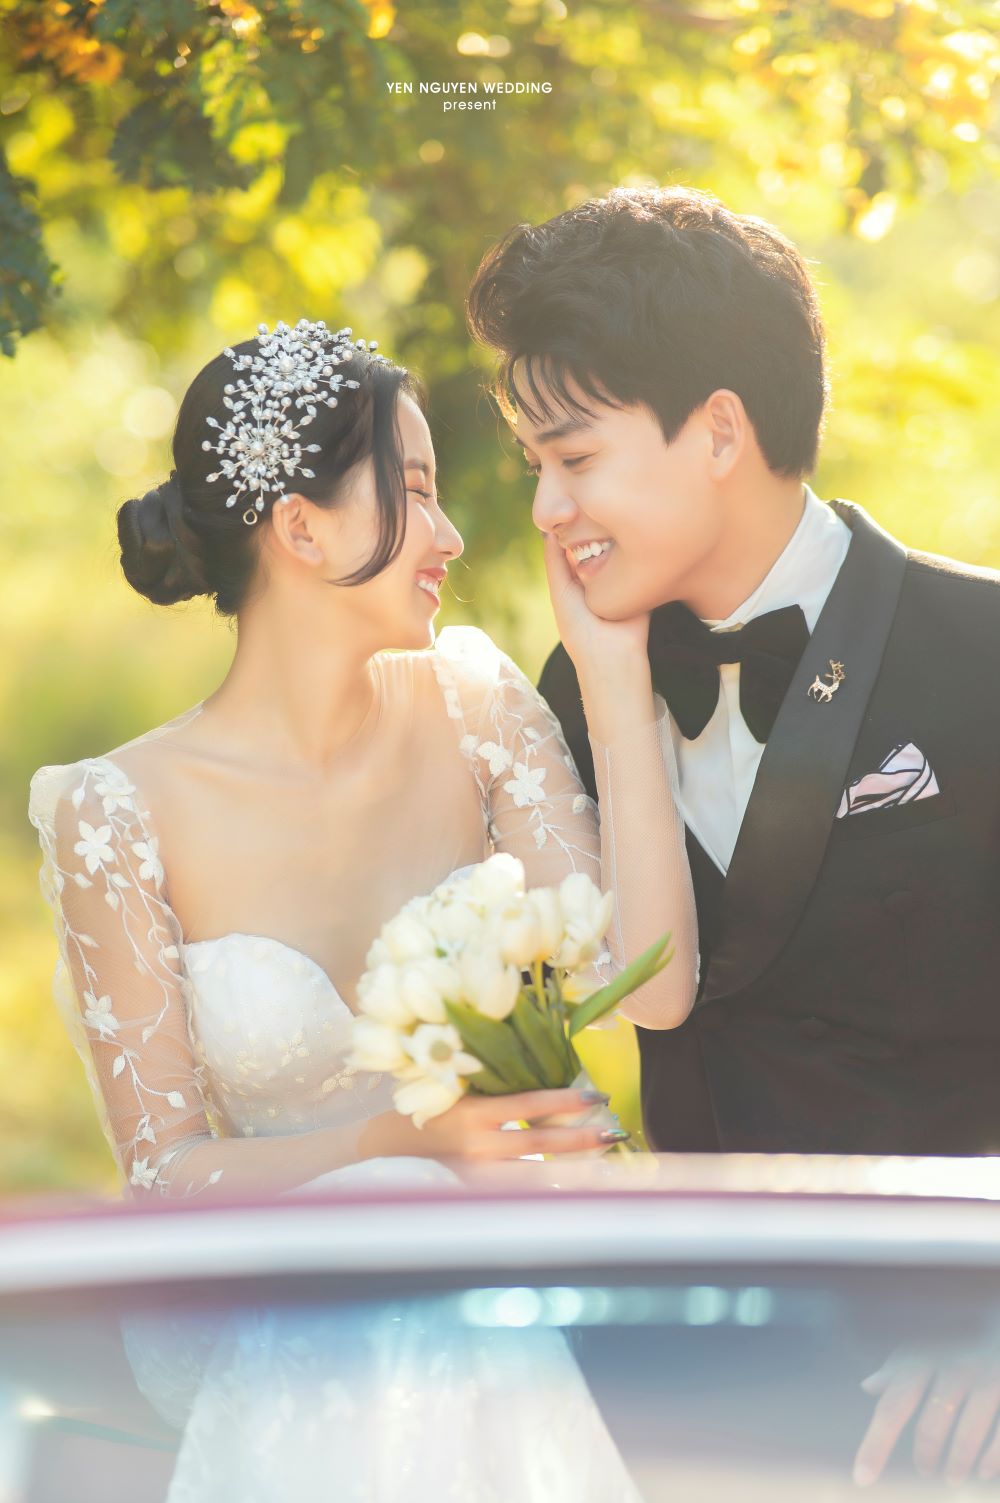 Yen Nguyen Bridal - Nơi gắn kết tình yêu lứa đôi